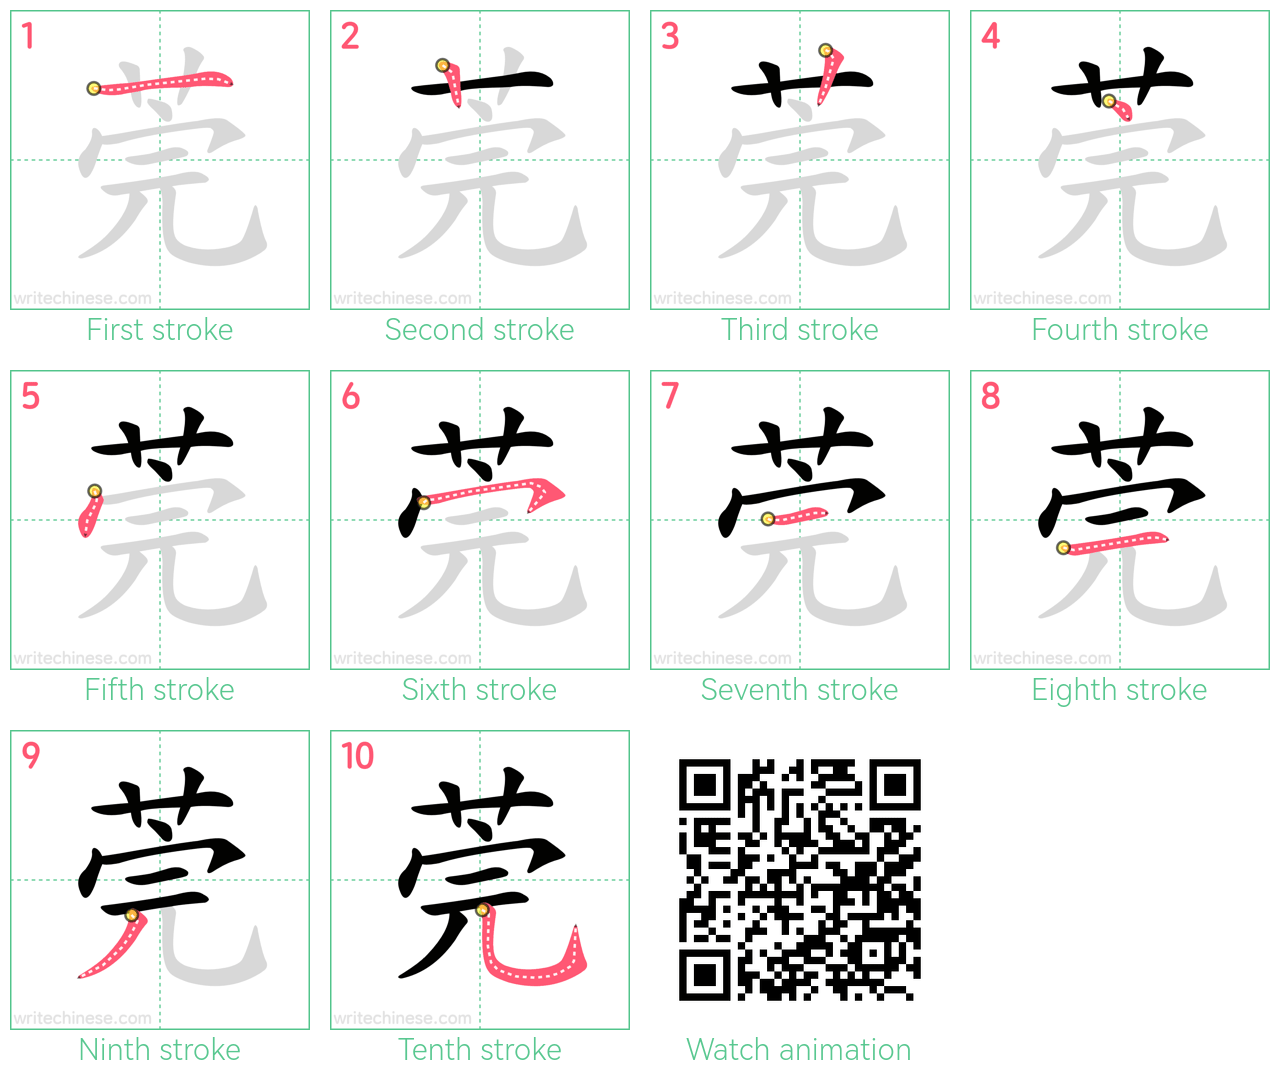 莞 step-by-step stroke order diagrams